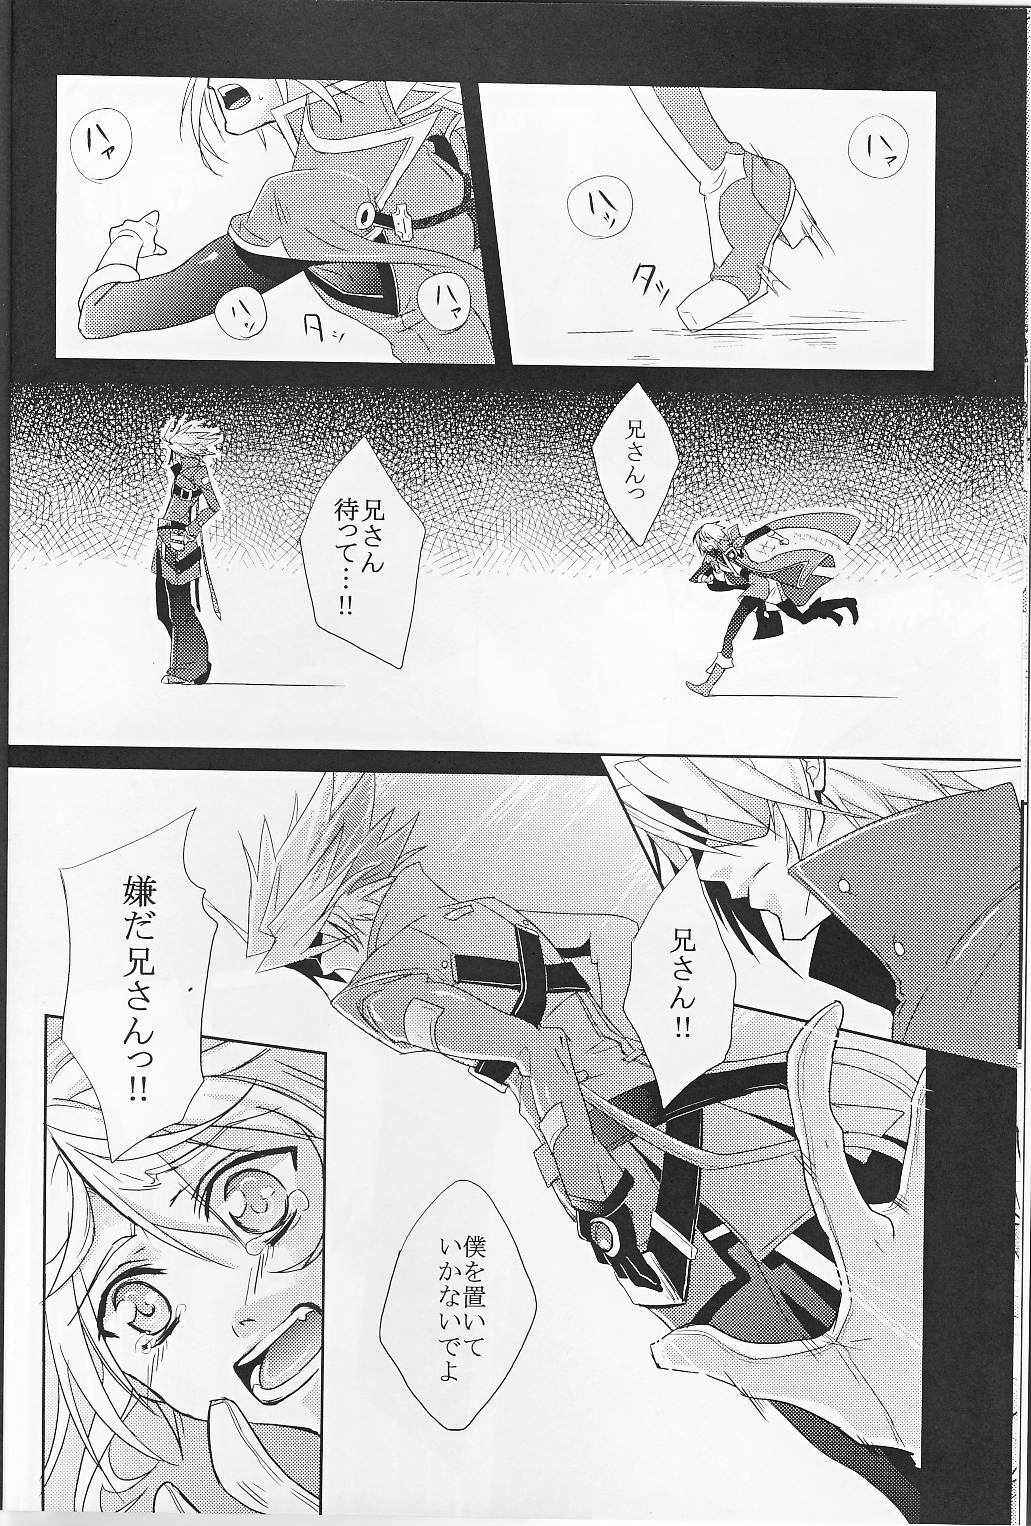 [smat. (Akatsuki Tomato)] Silly (BLAZBLUE) page 9 full